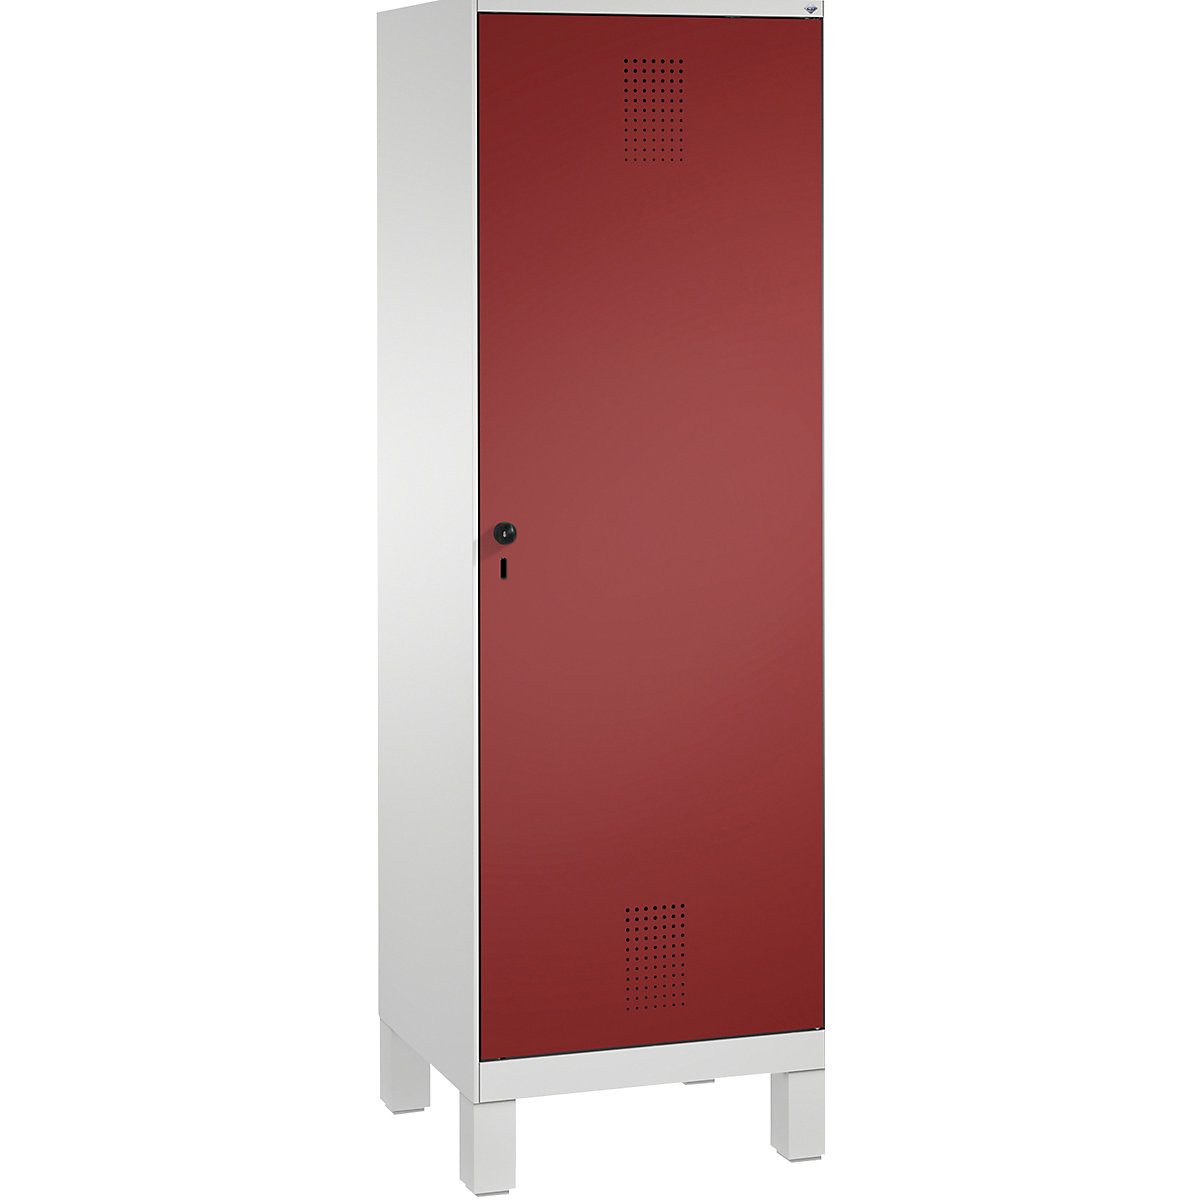 EVOLO Garderobenschrank, Tür über 2 Abteile, mit Füßen C+P, 2 Abteile, 1 Tür, Abteilbreite 300 mm, lichtgrau / rubinrot-6